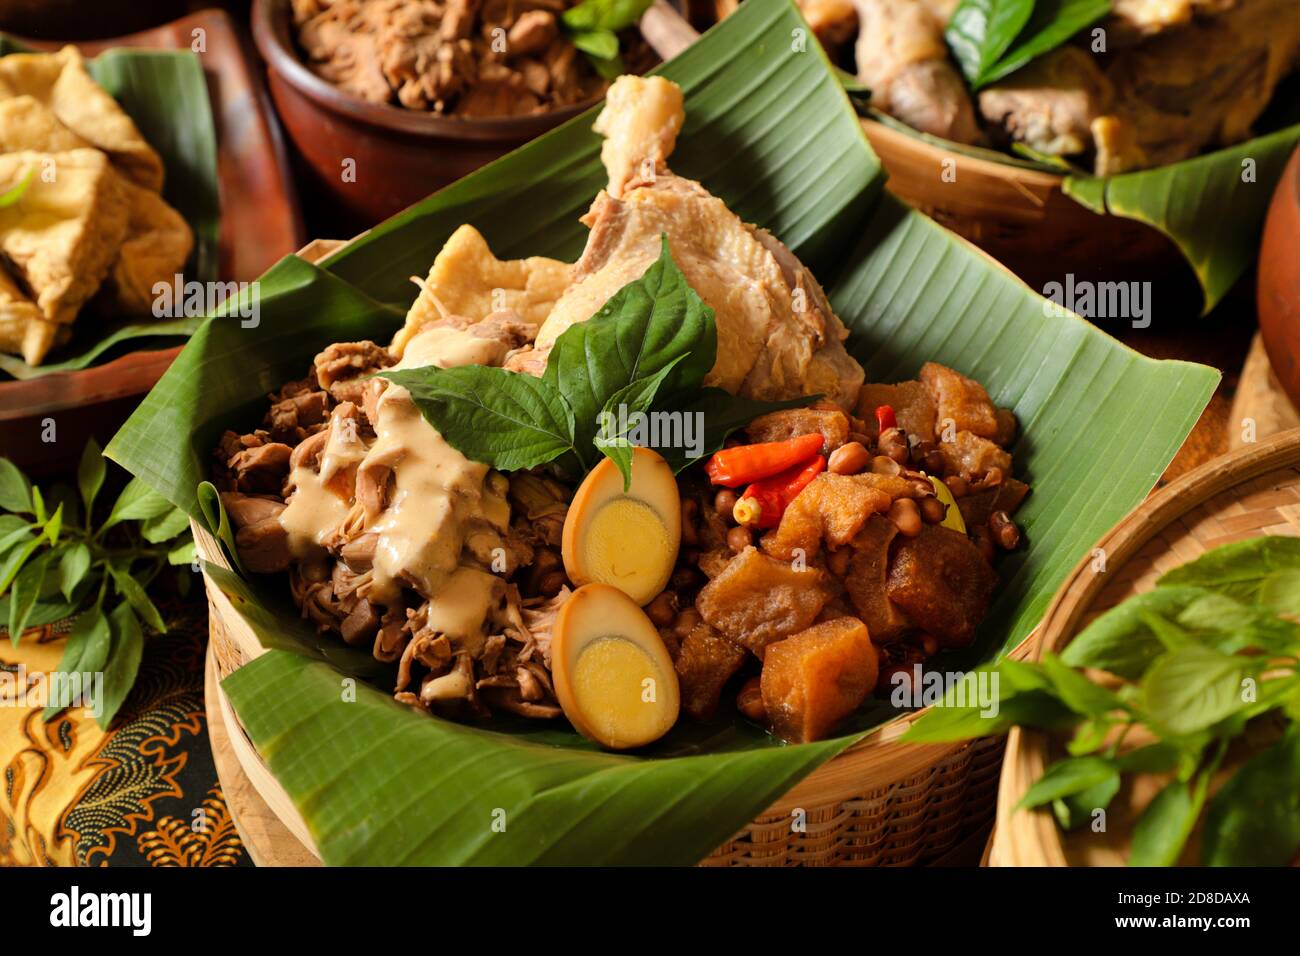 Gudeg Jogja. Javanese Gericht besteht aus Jack Fruit Eintopf, Huhn Curry  und würzigen Eintopf von Rind Haut Cracker in Bambuskorb Stockfotografie -  Alamy